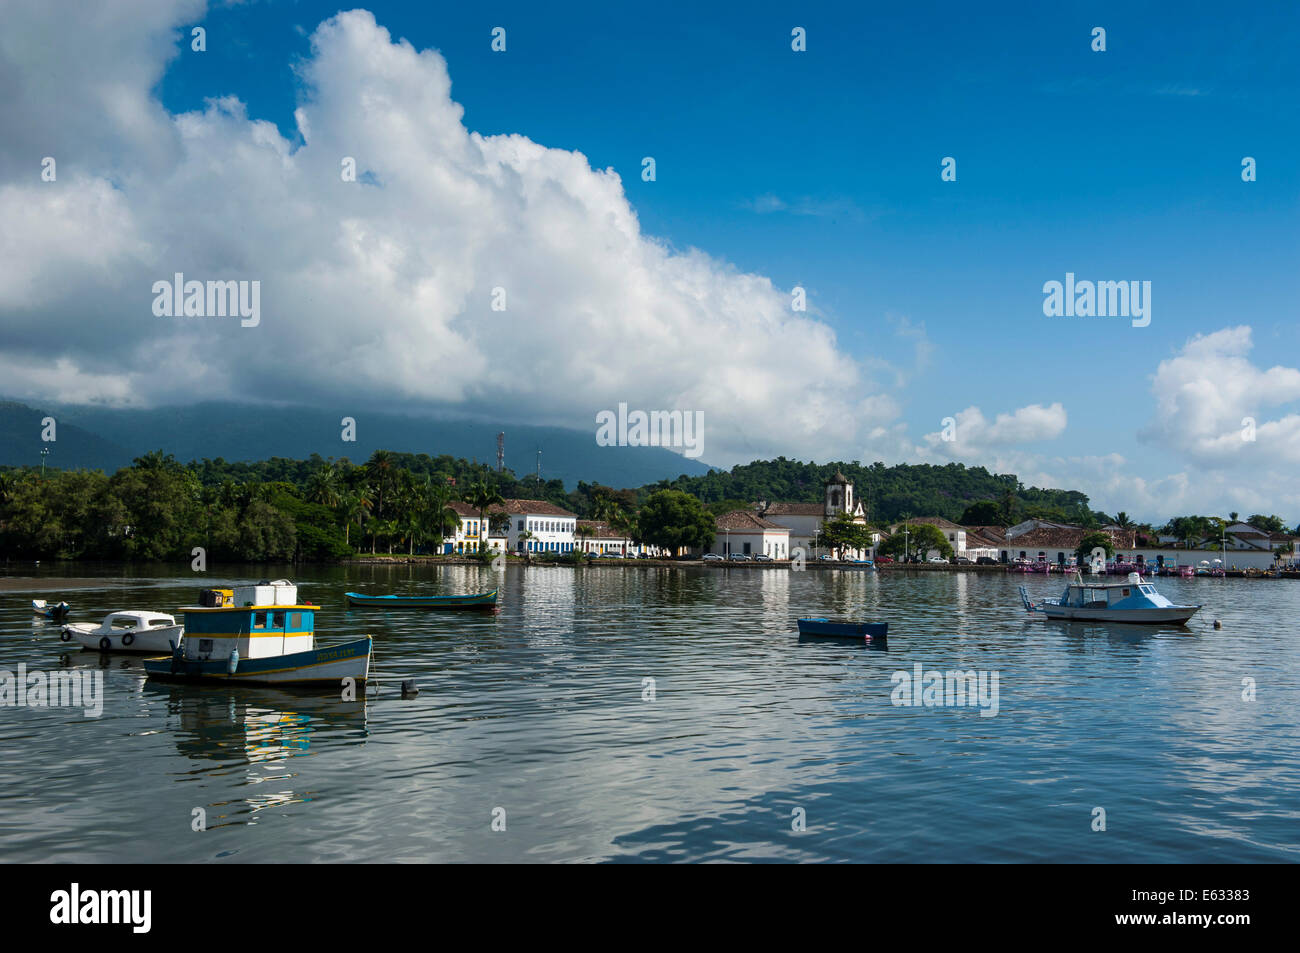 Porto del brasile immagini e fotografie stock ad alta risoluzione - Alamy